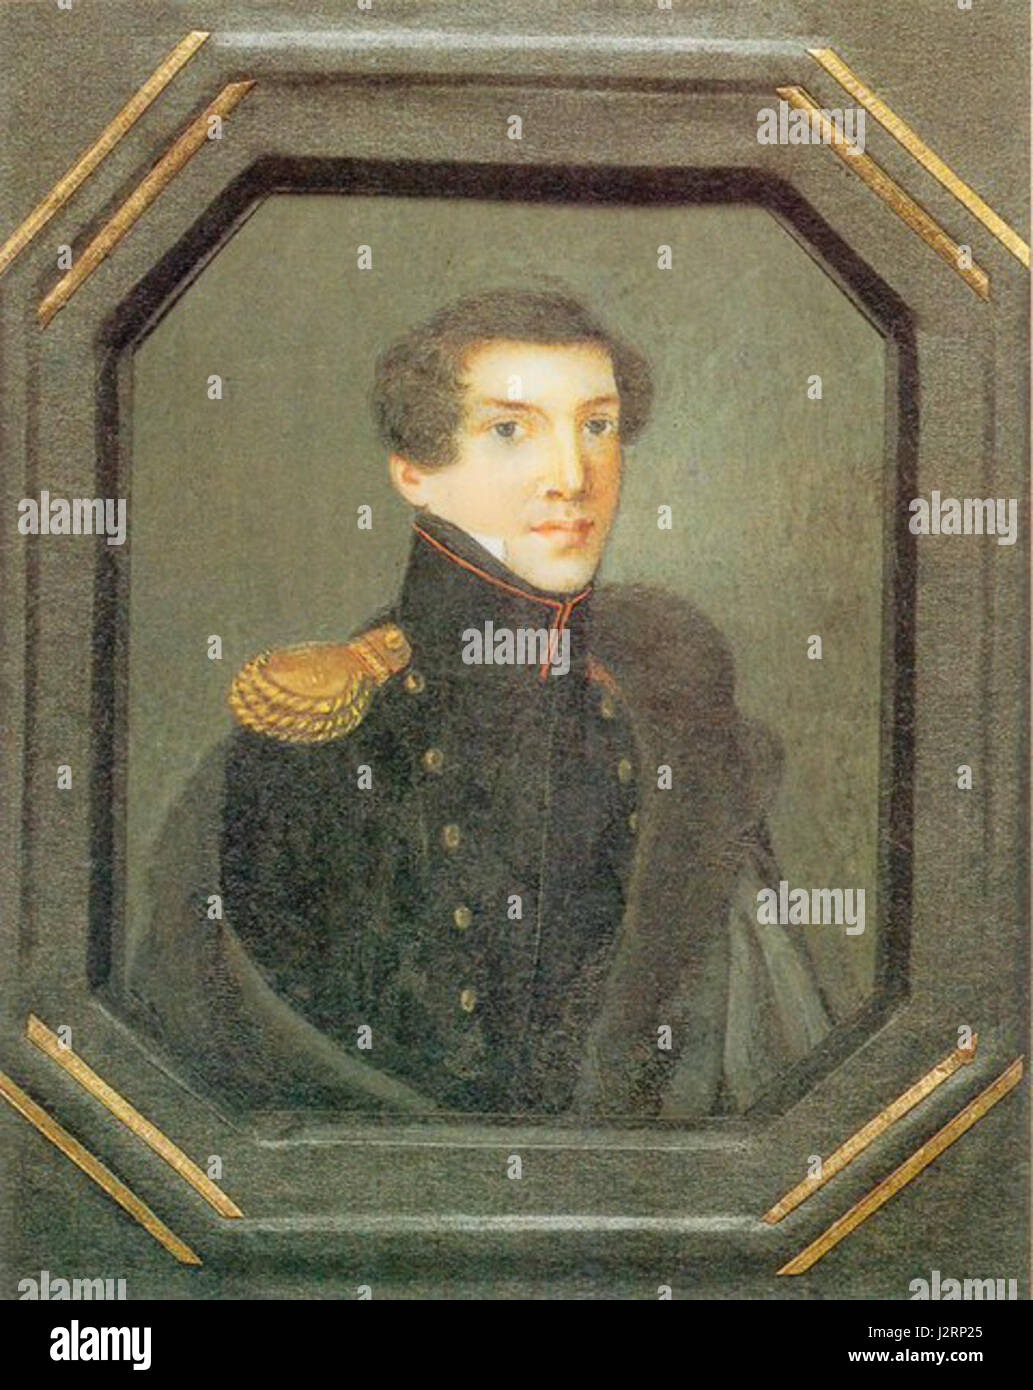 Prince Alexander Nikolaevich Vyazemsky, 1820s Stock Photo